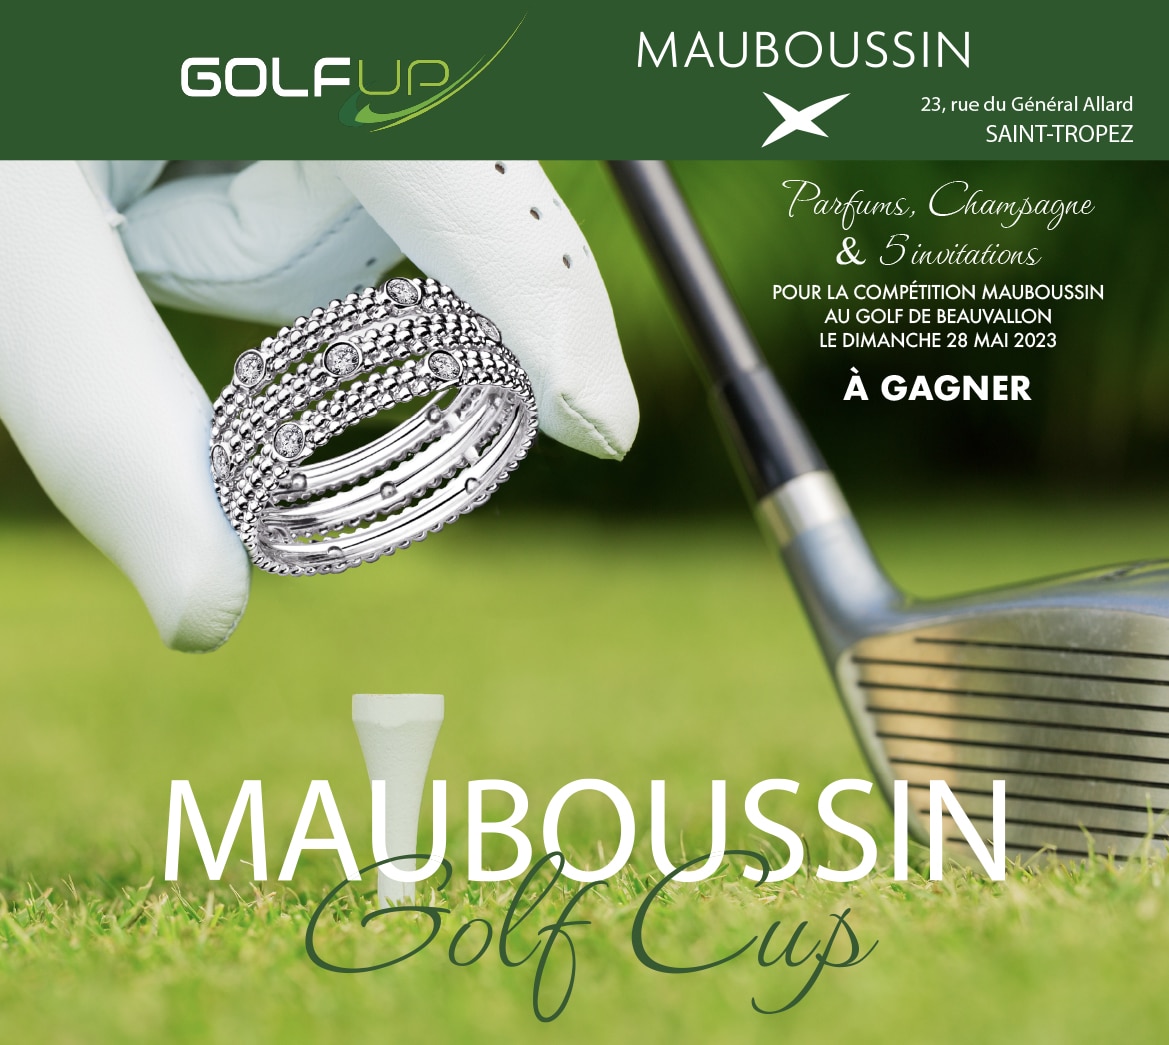 Mauboussin Golf Cup